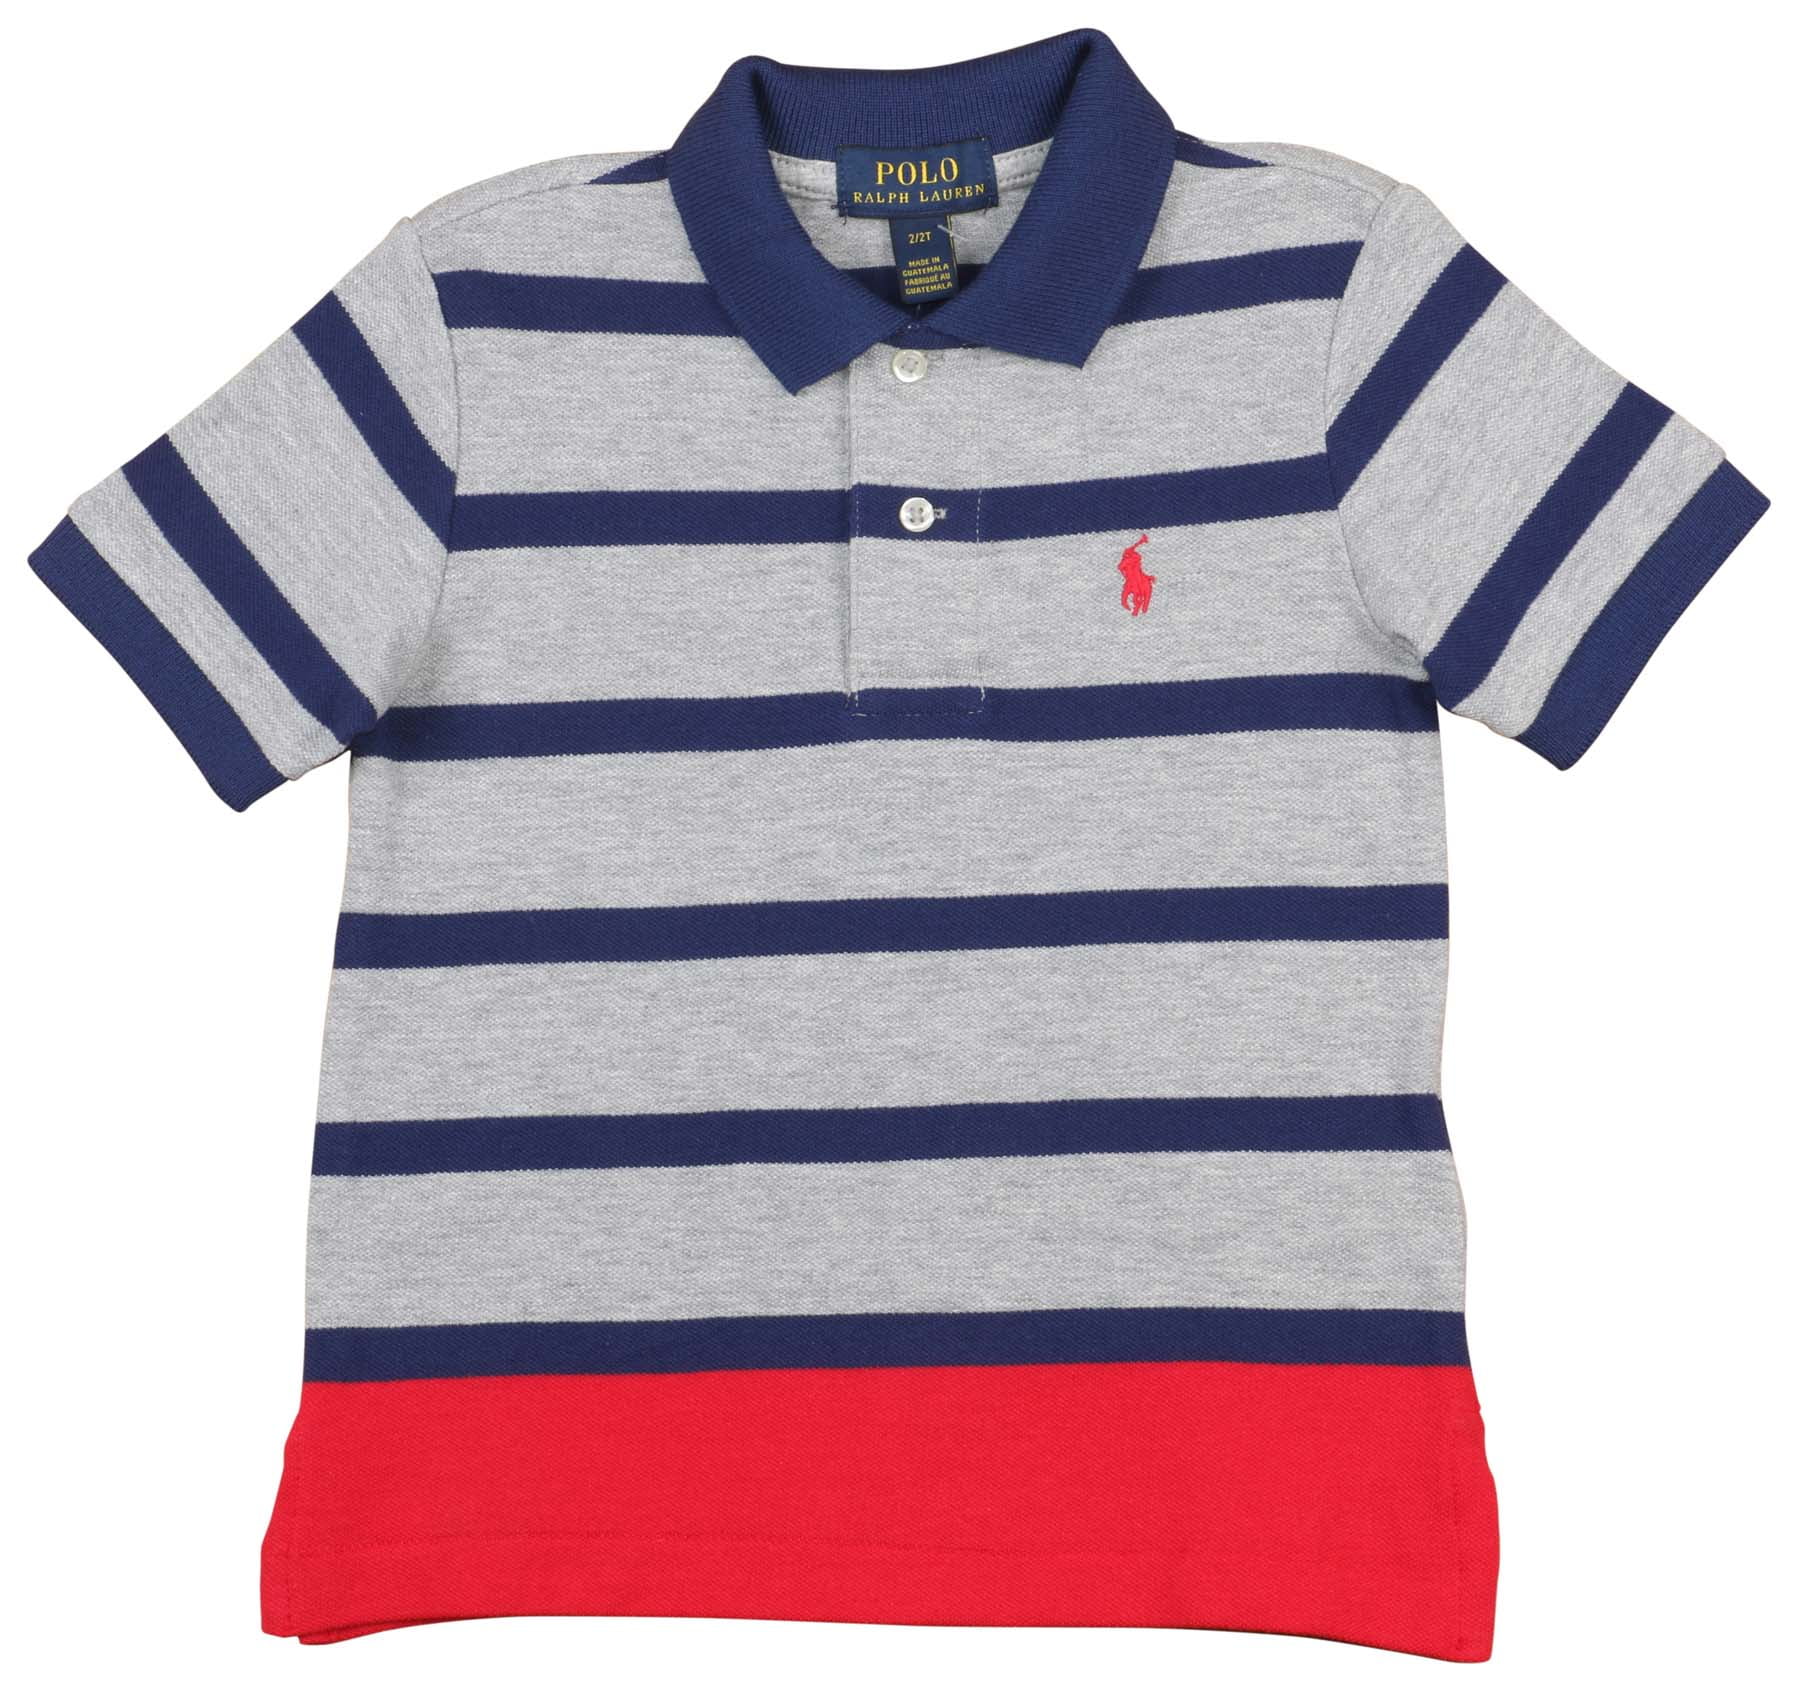 Boys polo. Polo RL boy's Mesh Polo Shirt. Ralph Lauren boys Striped Cotton Jersey Henley.